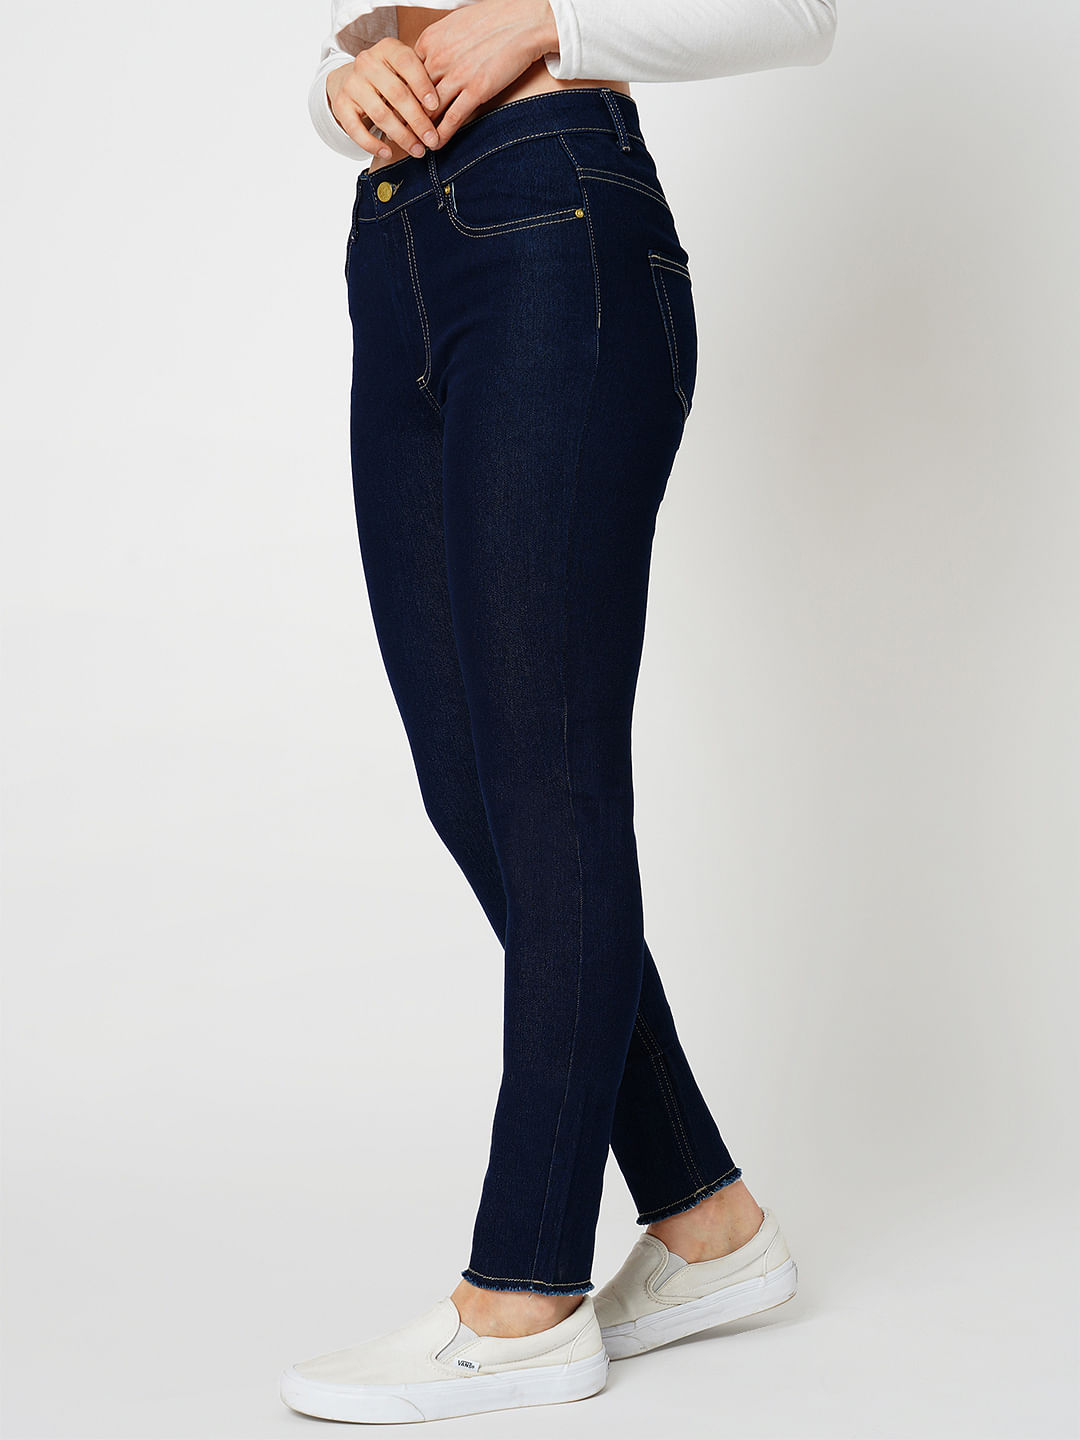 Women's Jeans & Denim: Shop White, Black, Blue Jeans + More - Chico's